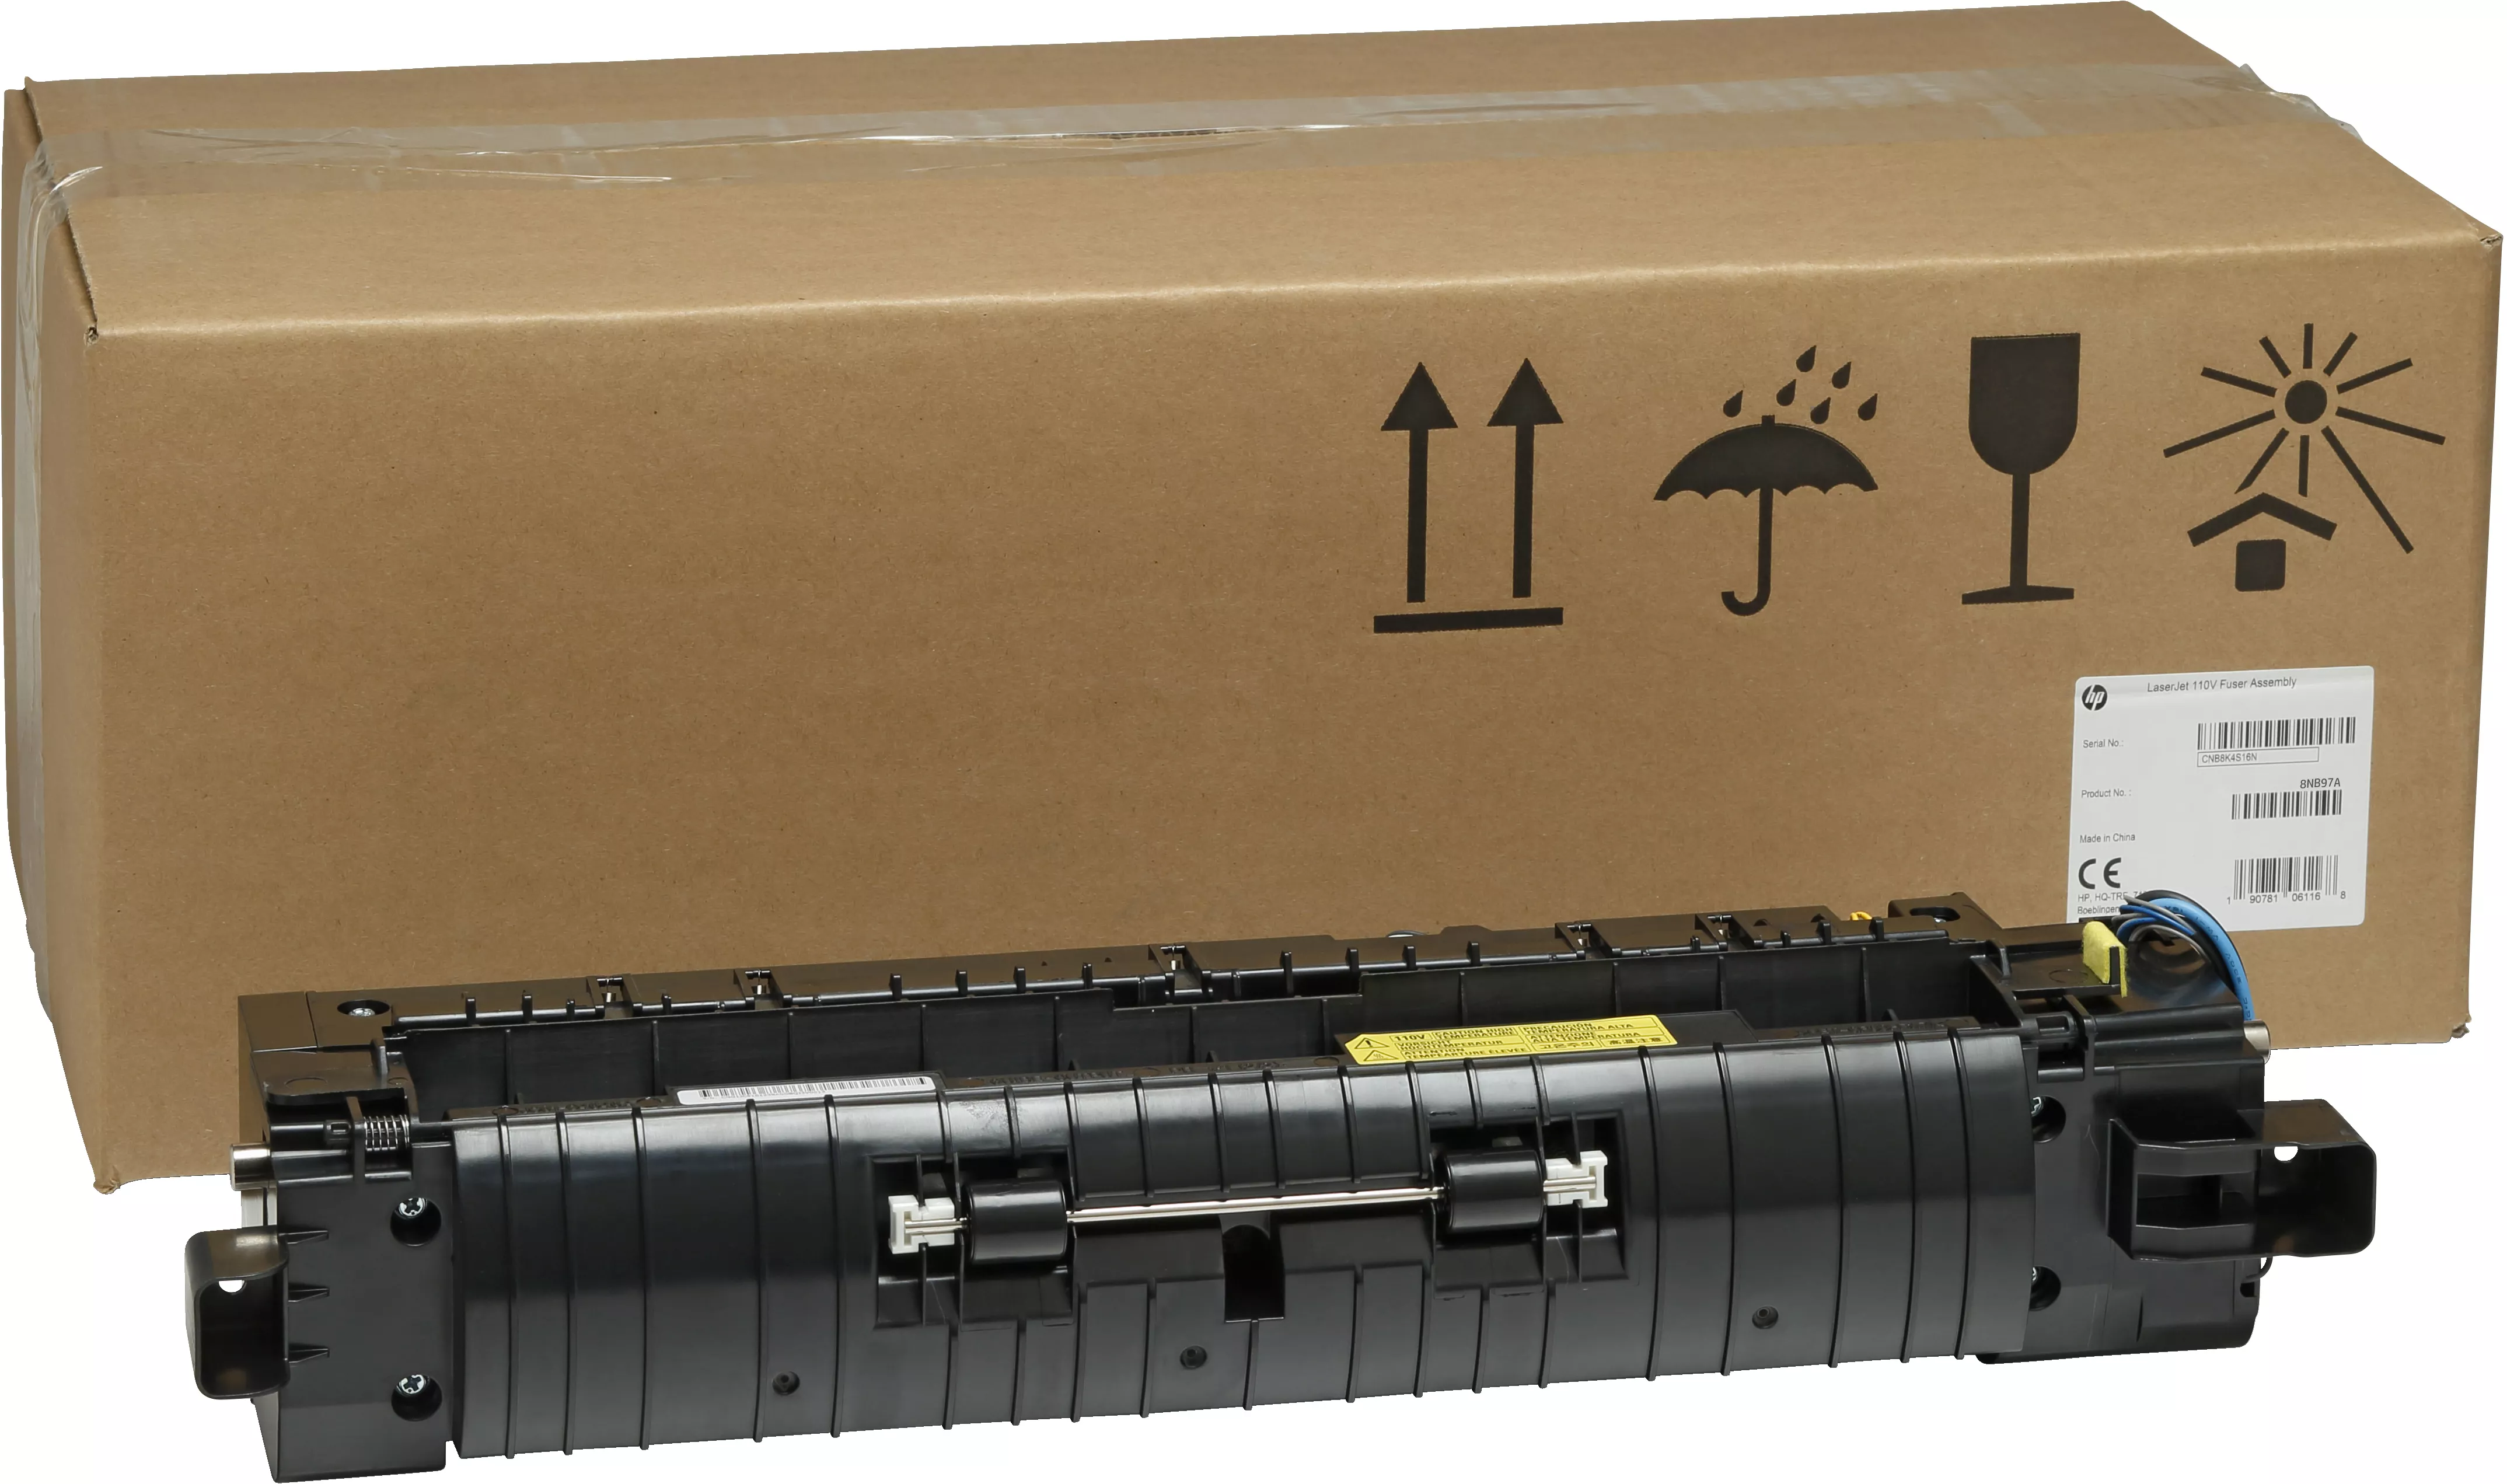 Vente Kit de fusion HP LaserJet 220 V HP au meilleur prix - visuel 6